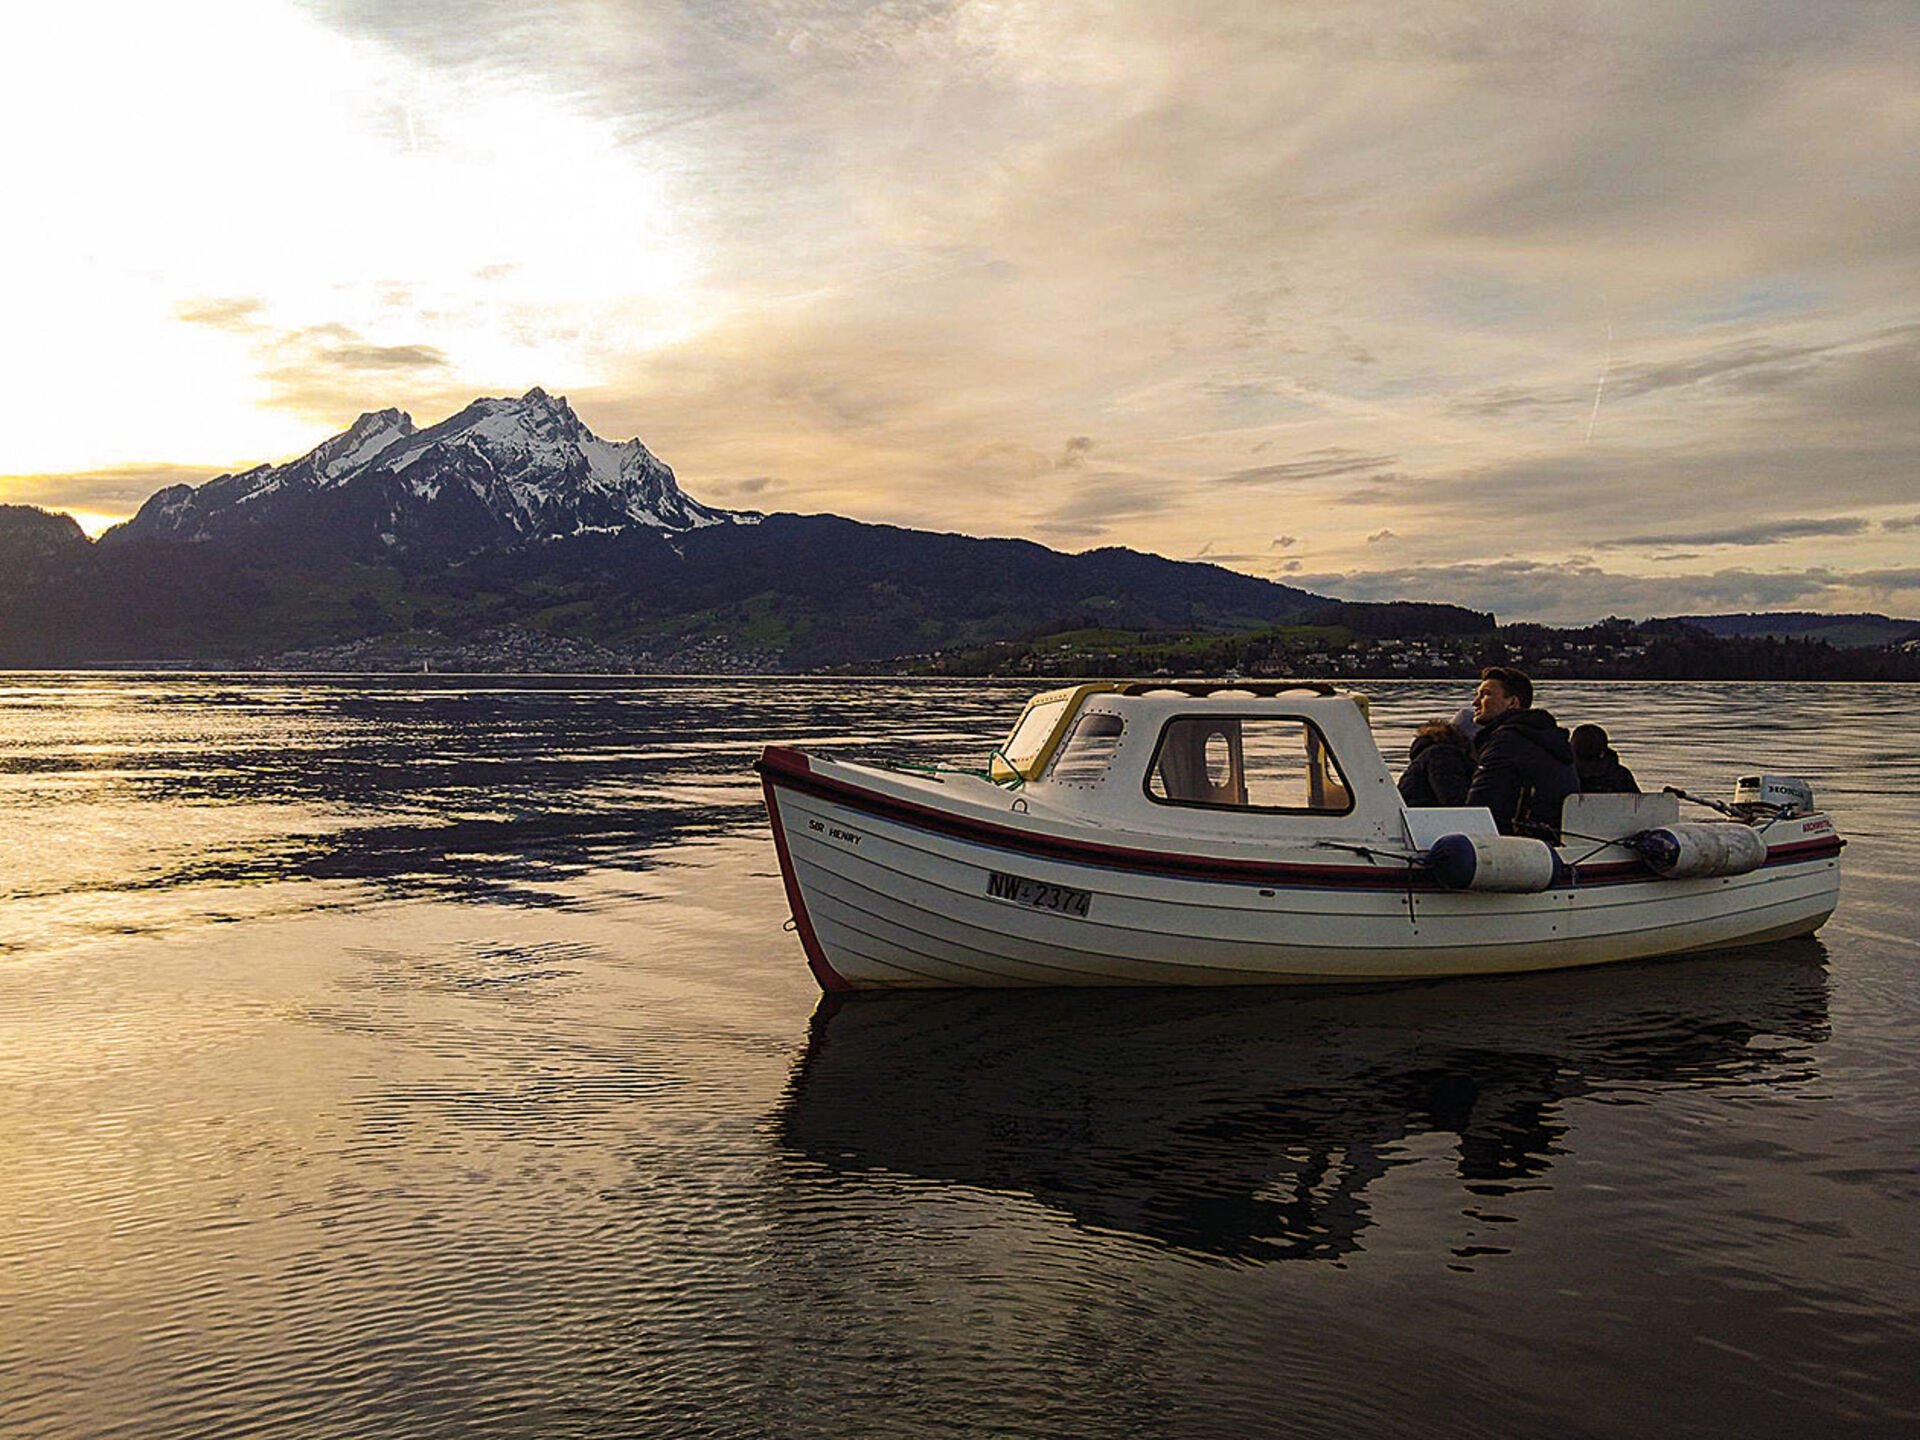  Mit einem Boot lässt sich gut auf eine weitschweifige fischereiliche Erkundungstour gehen.  